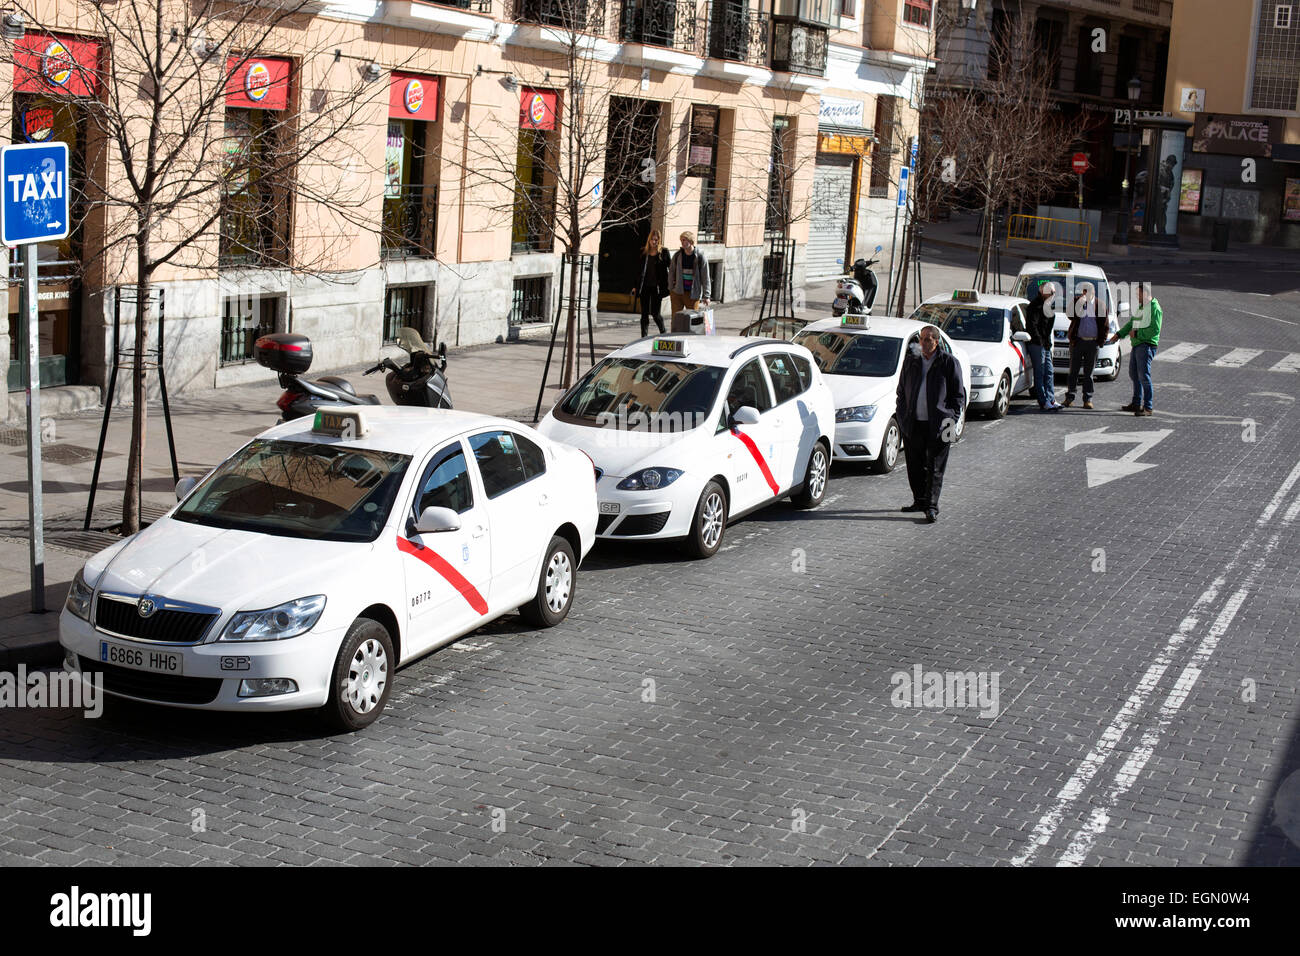 Taxi rank ufficiale di coda di automobili in attesa Foto Stock